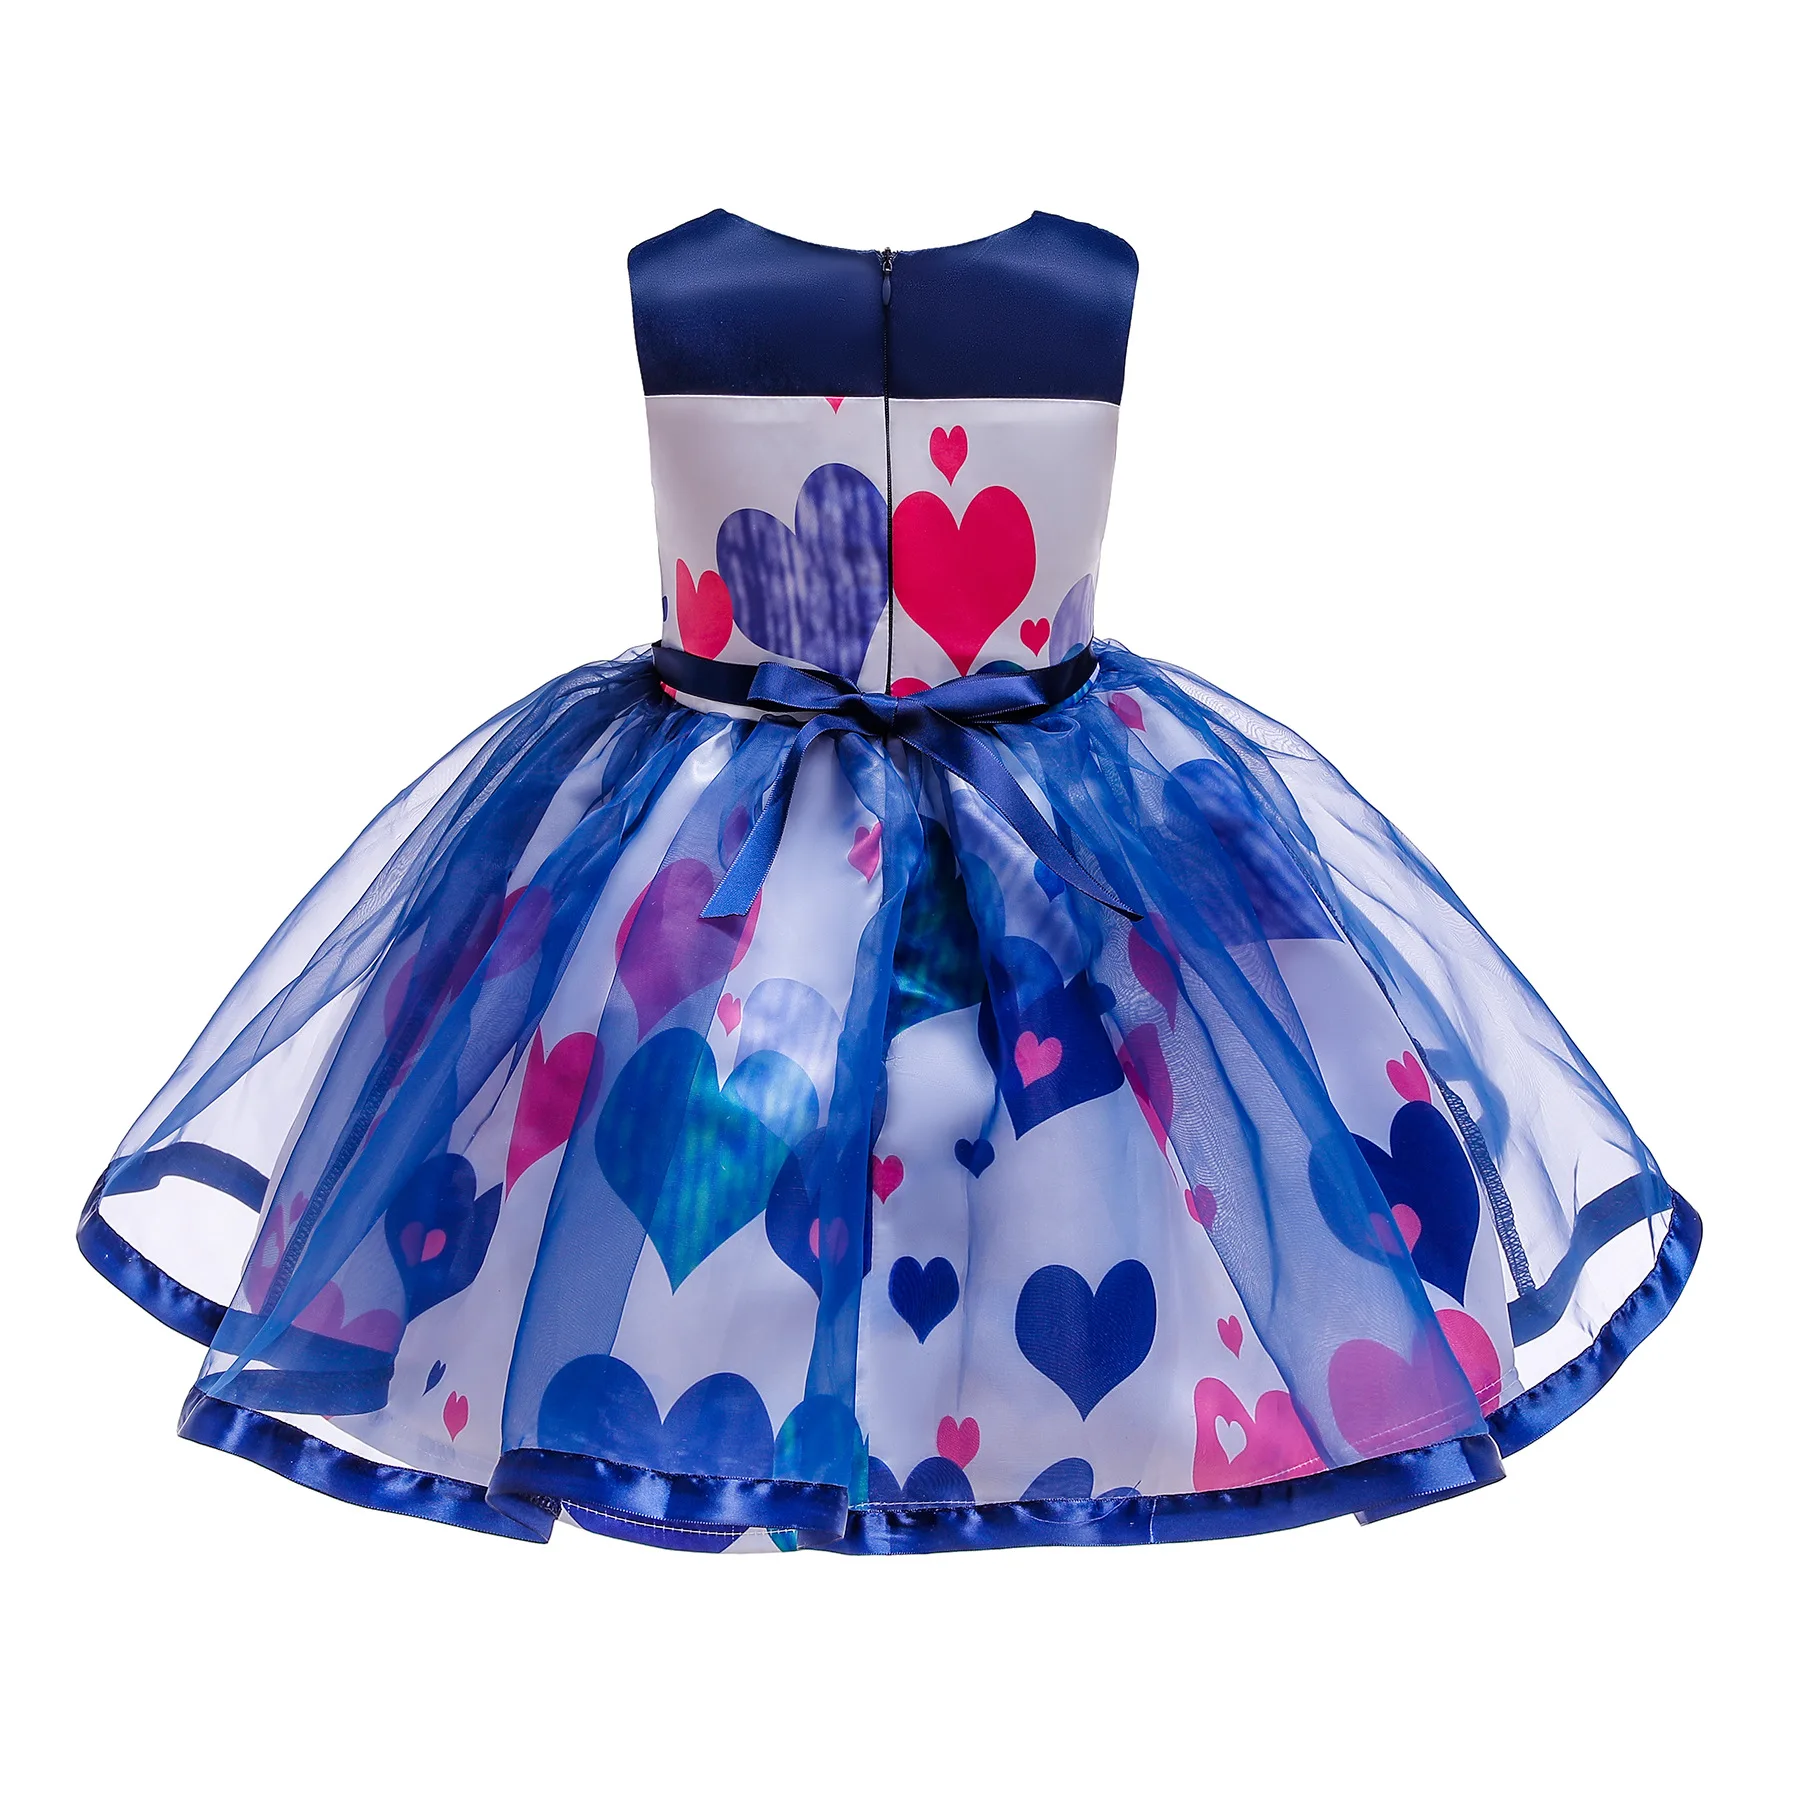 Лето 2019, платье принцессы для девочек, для свадебной вечеринки, пышное детское платье-пачка с сердечками, одежда для девочек, vestido infantil, для